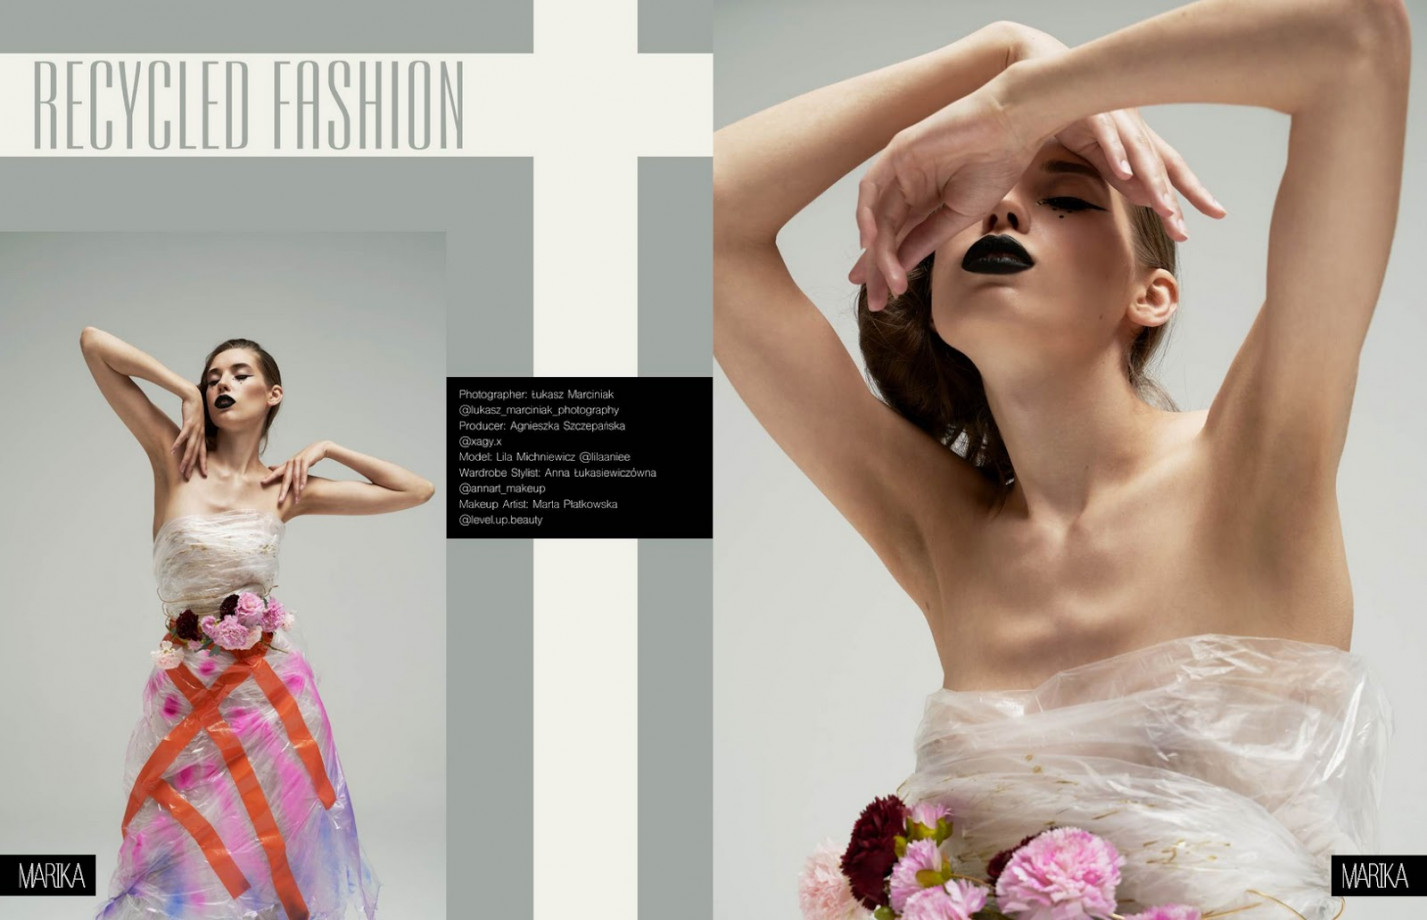 fotograf warszawa lukaszmarciniak portfolio zdjecia fashion fotografia modowa